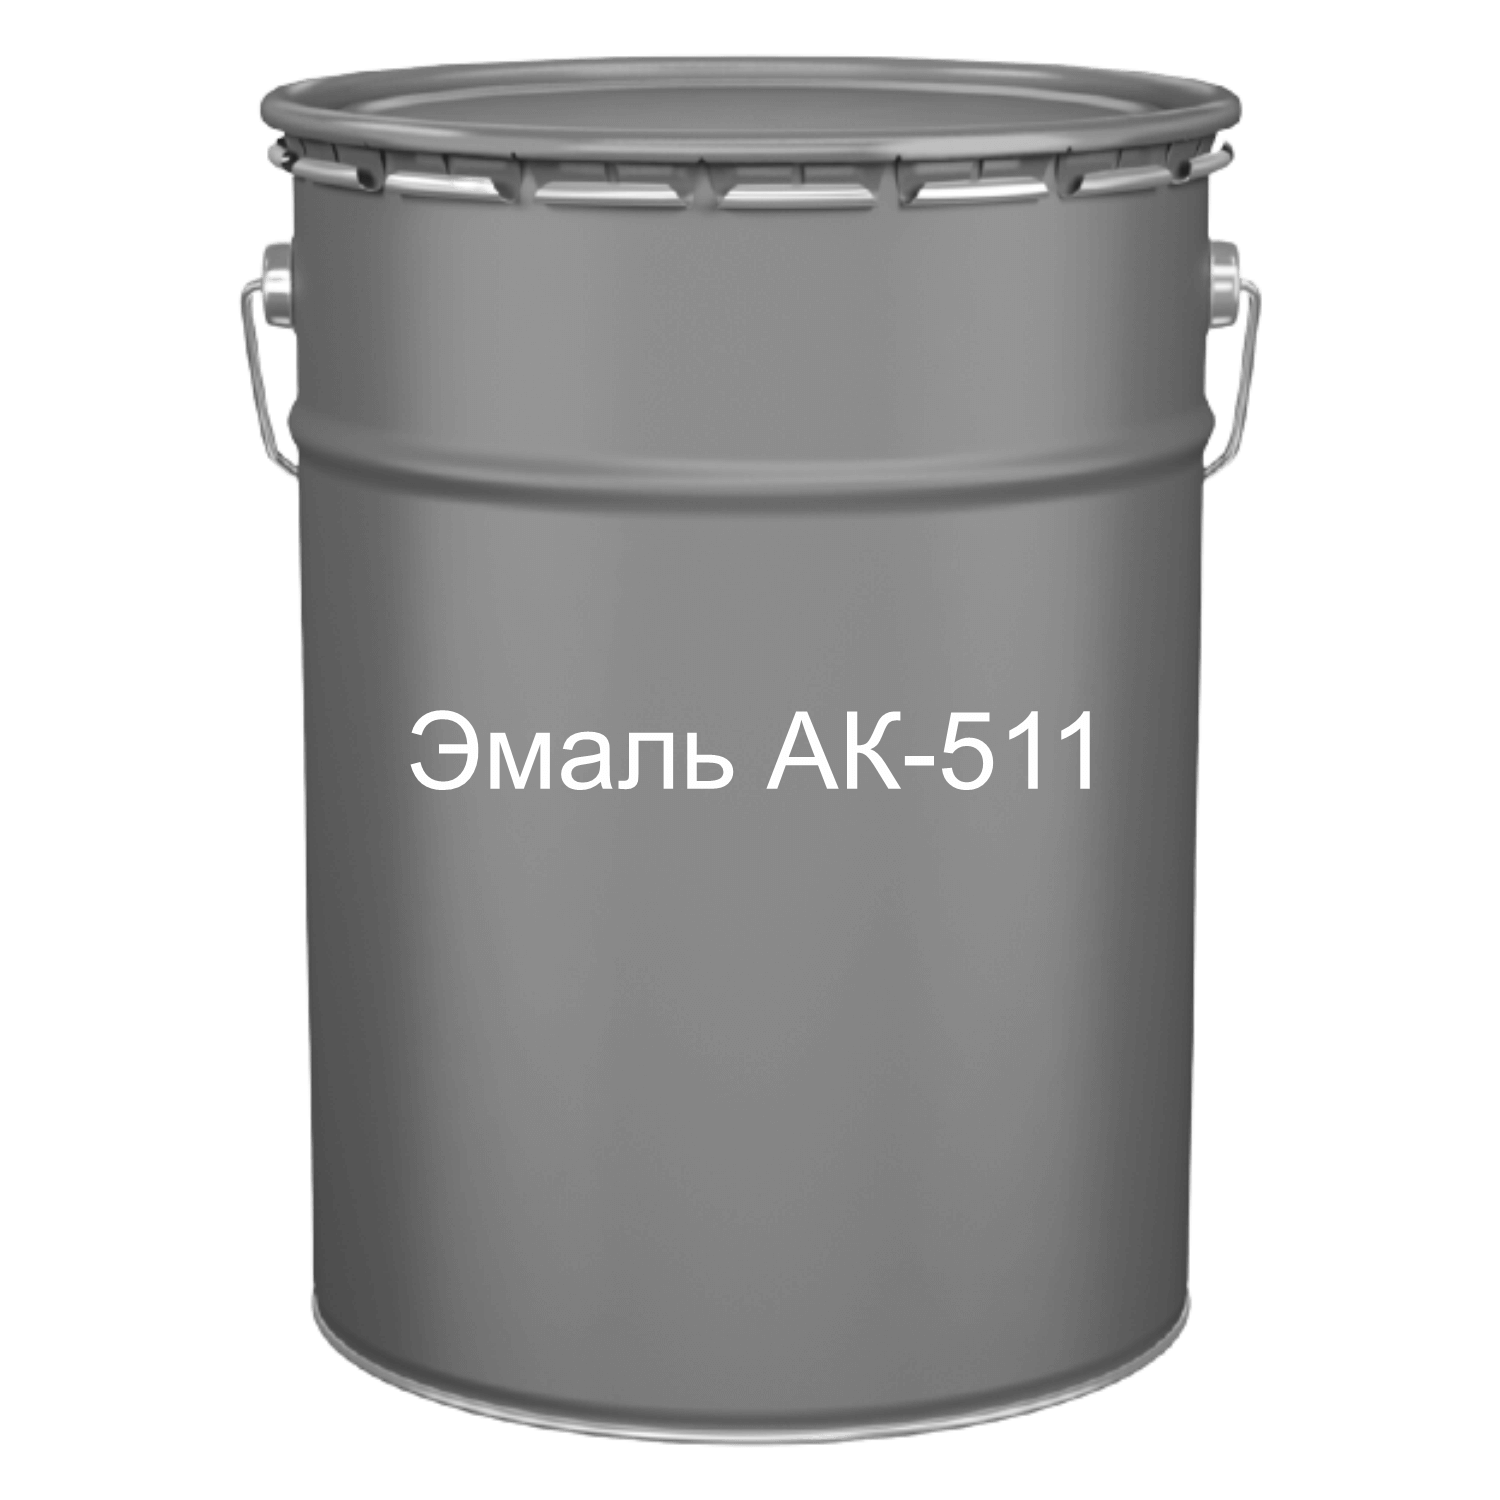 Краска для дорожной разметки ак-511 – свойства и характеристики